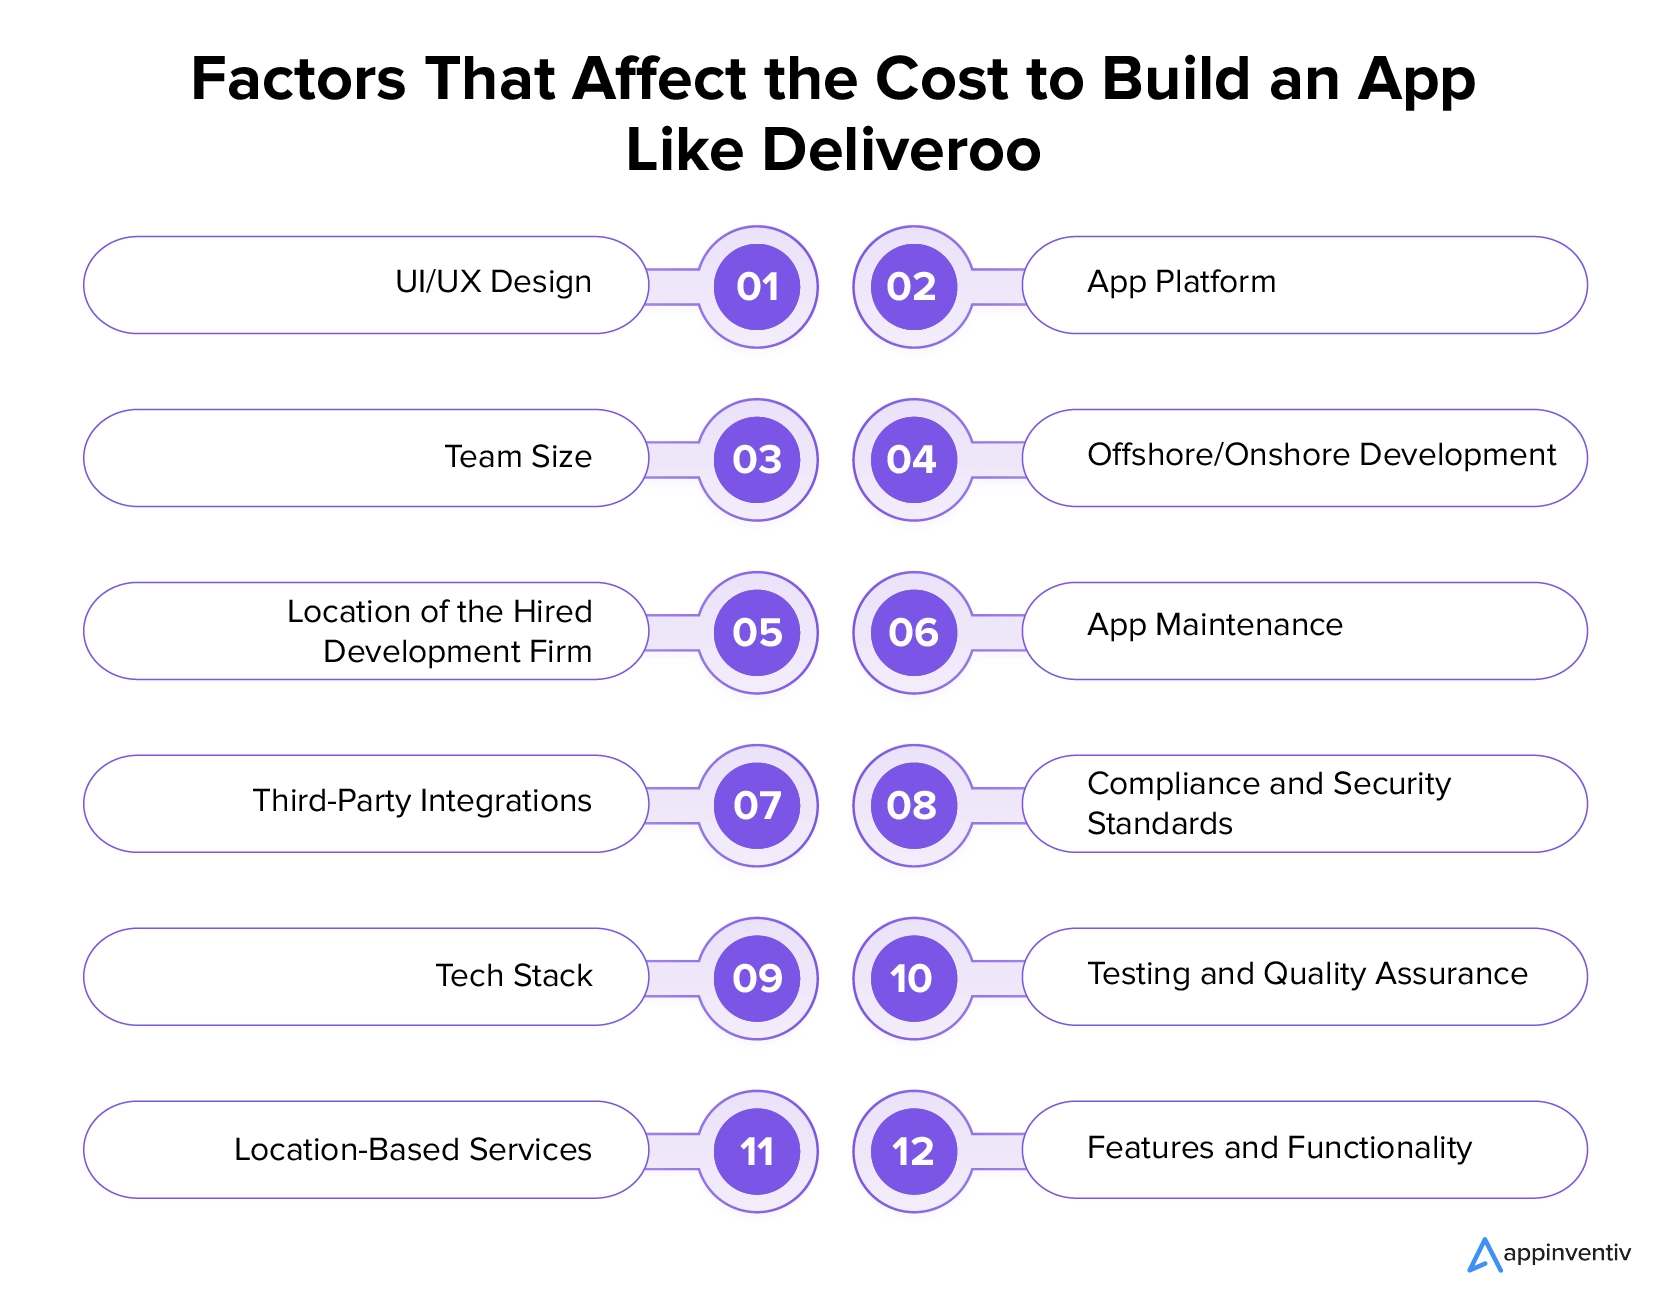 Facteurs qui affectent le coût de création d'une application comme Deliveroo